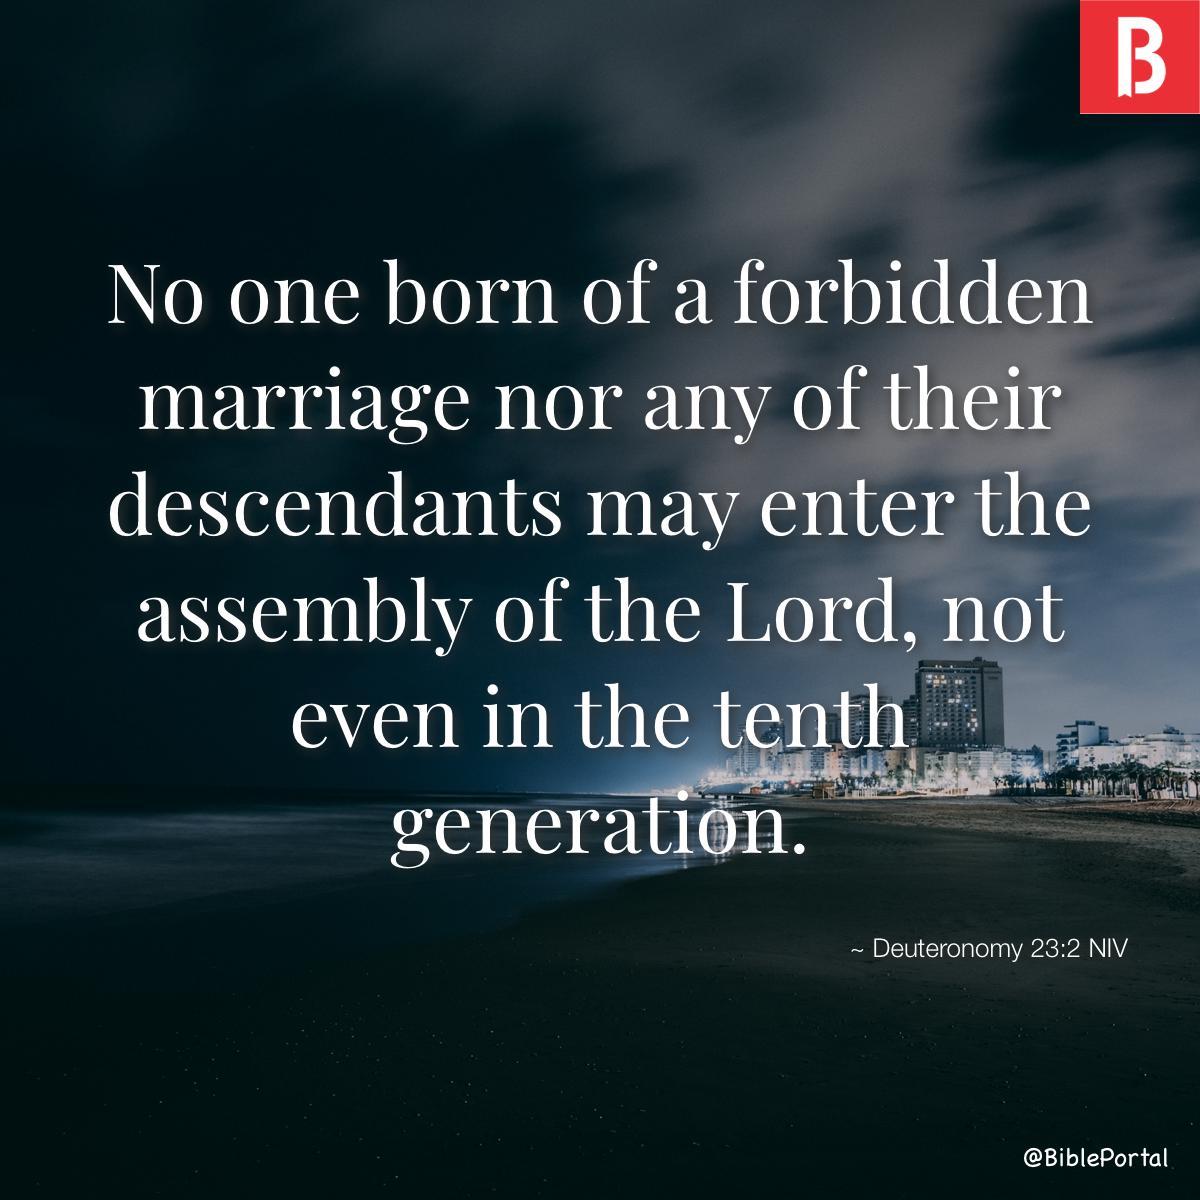 Deuteronomy 23:2 NIV